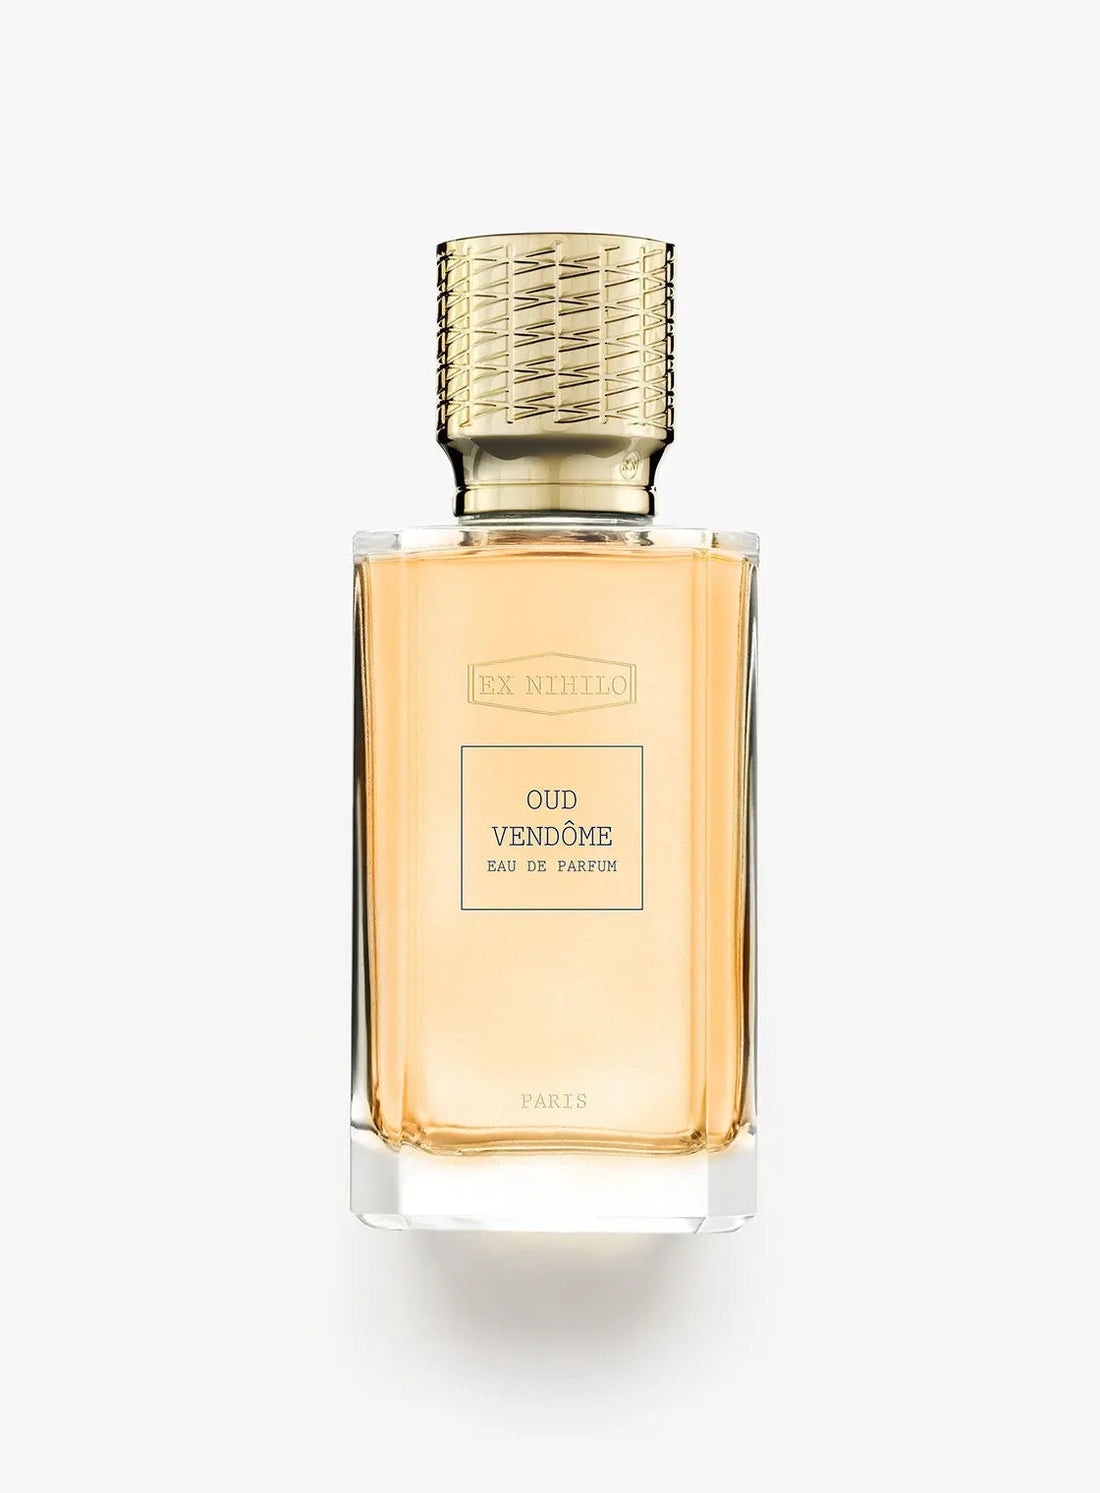 Ex nihilo Oud Vendôme eau de parfum - 50 ml